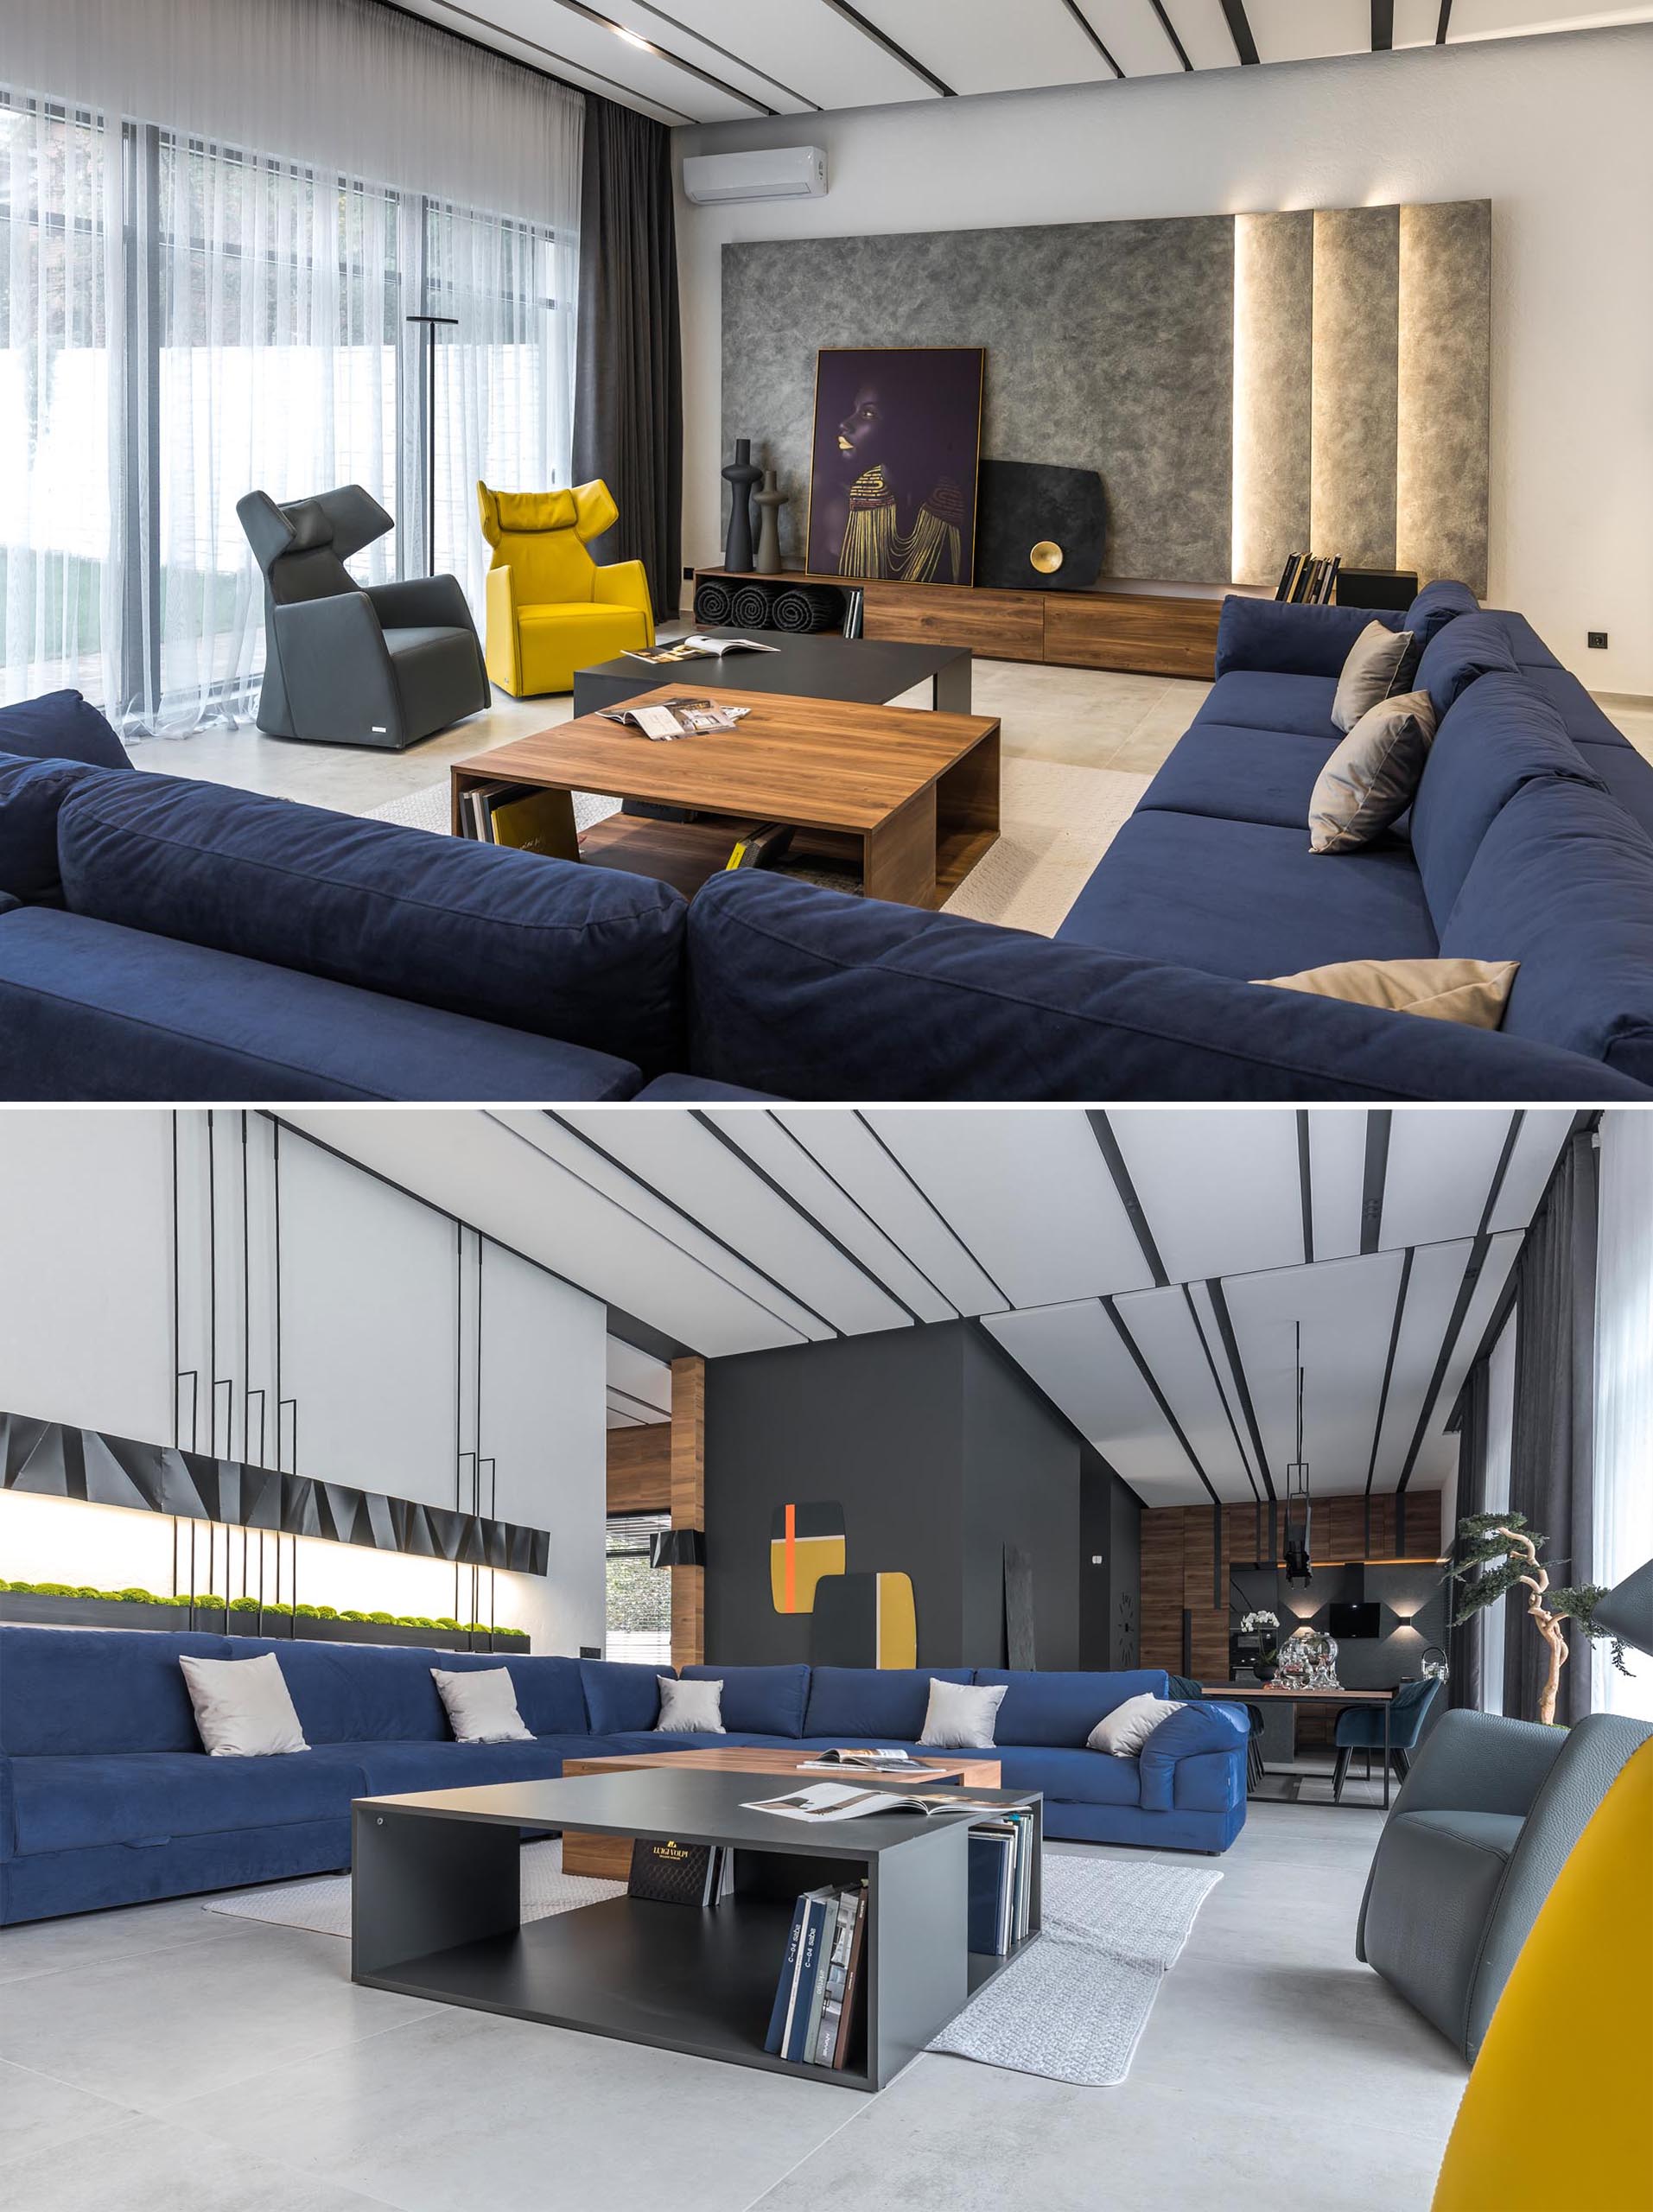 Современная гостиная с большим синим диваном, деревянным и серым журнальным столиком и ярко-желтым креслом.